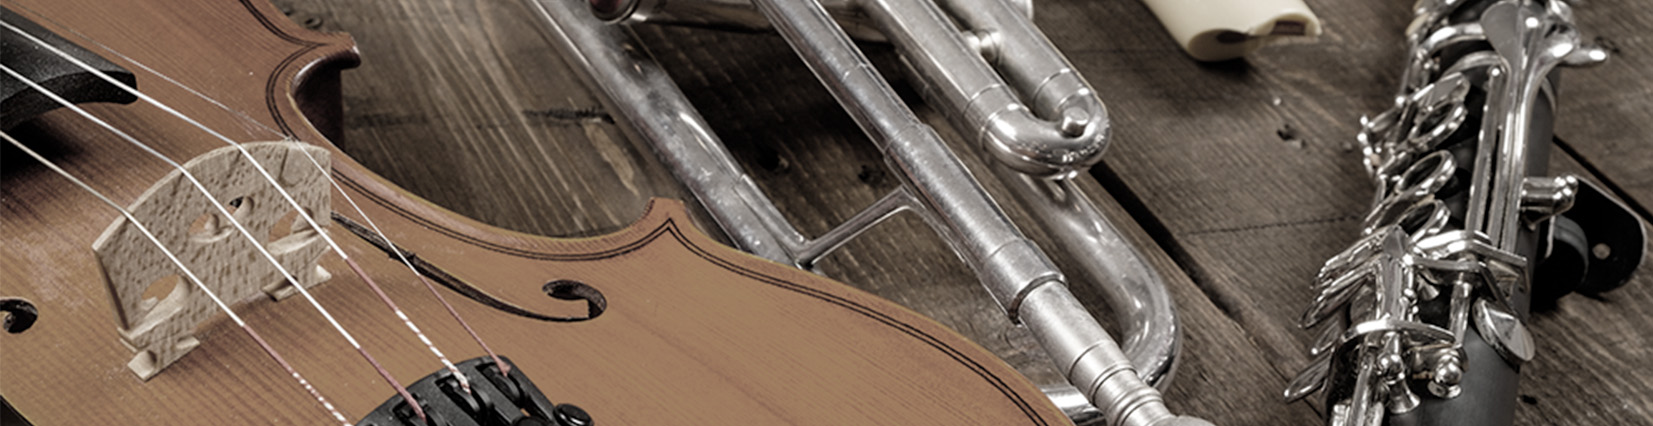 Violin repair courses